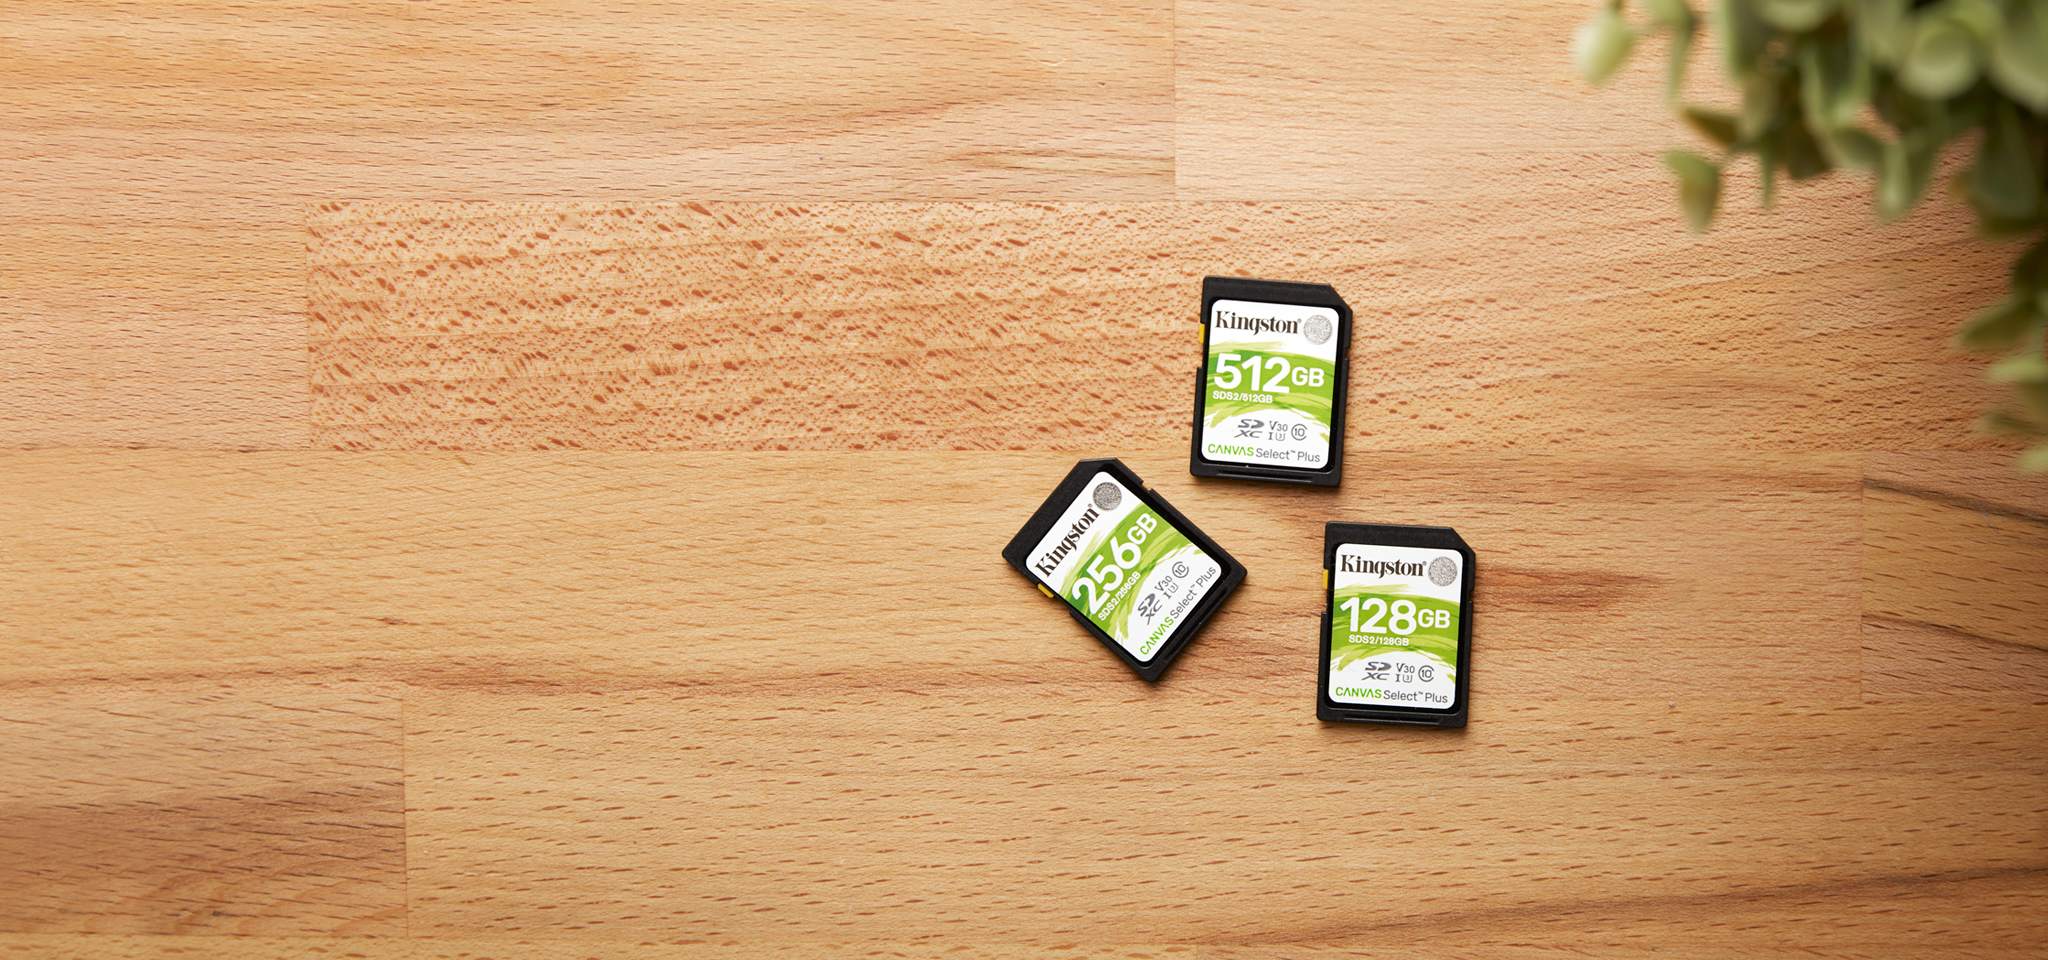 三張容量各有不同的 Canvas Select Plus SD 卡放置在一張木紋桌子